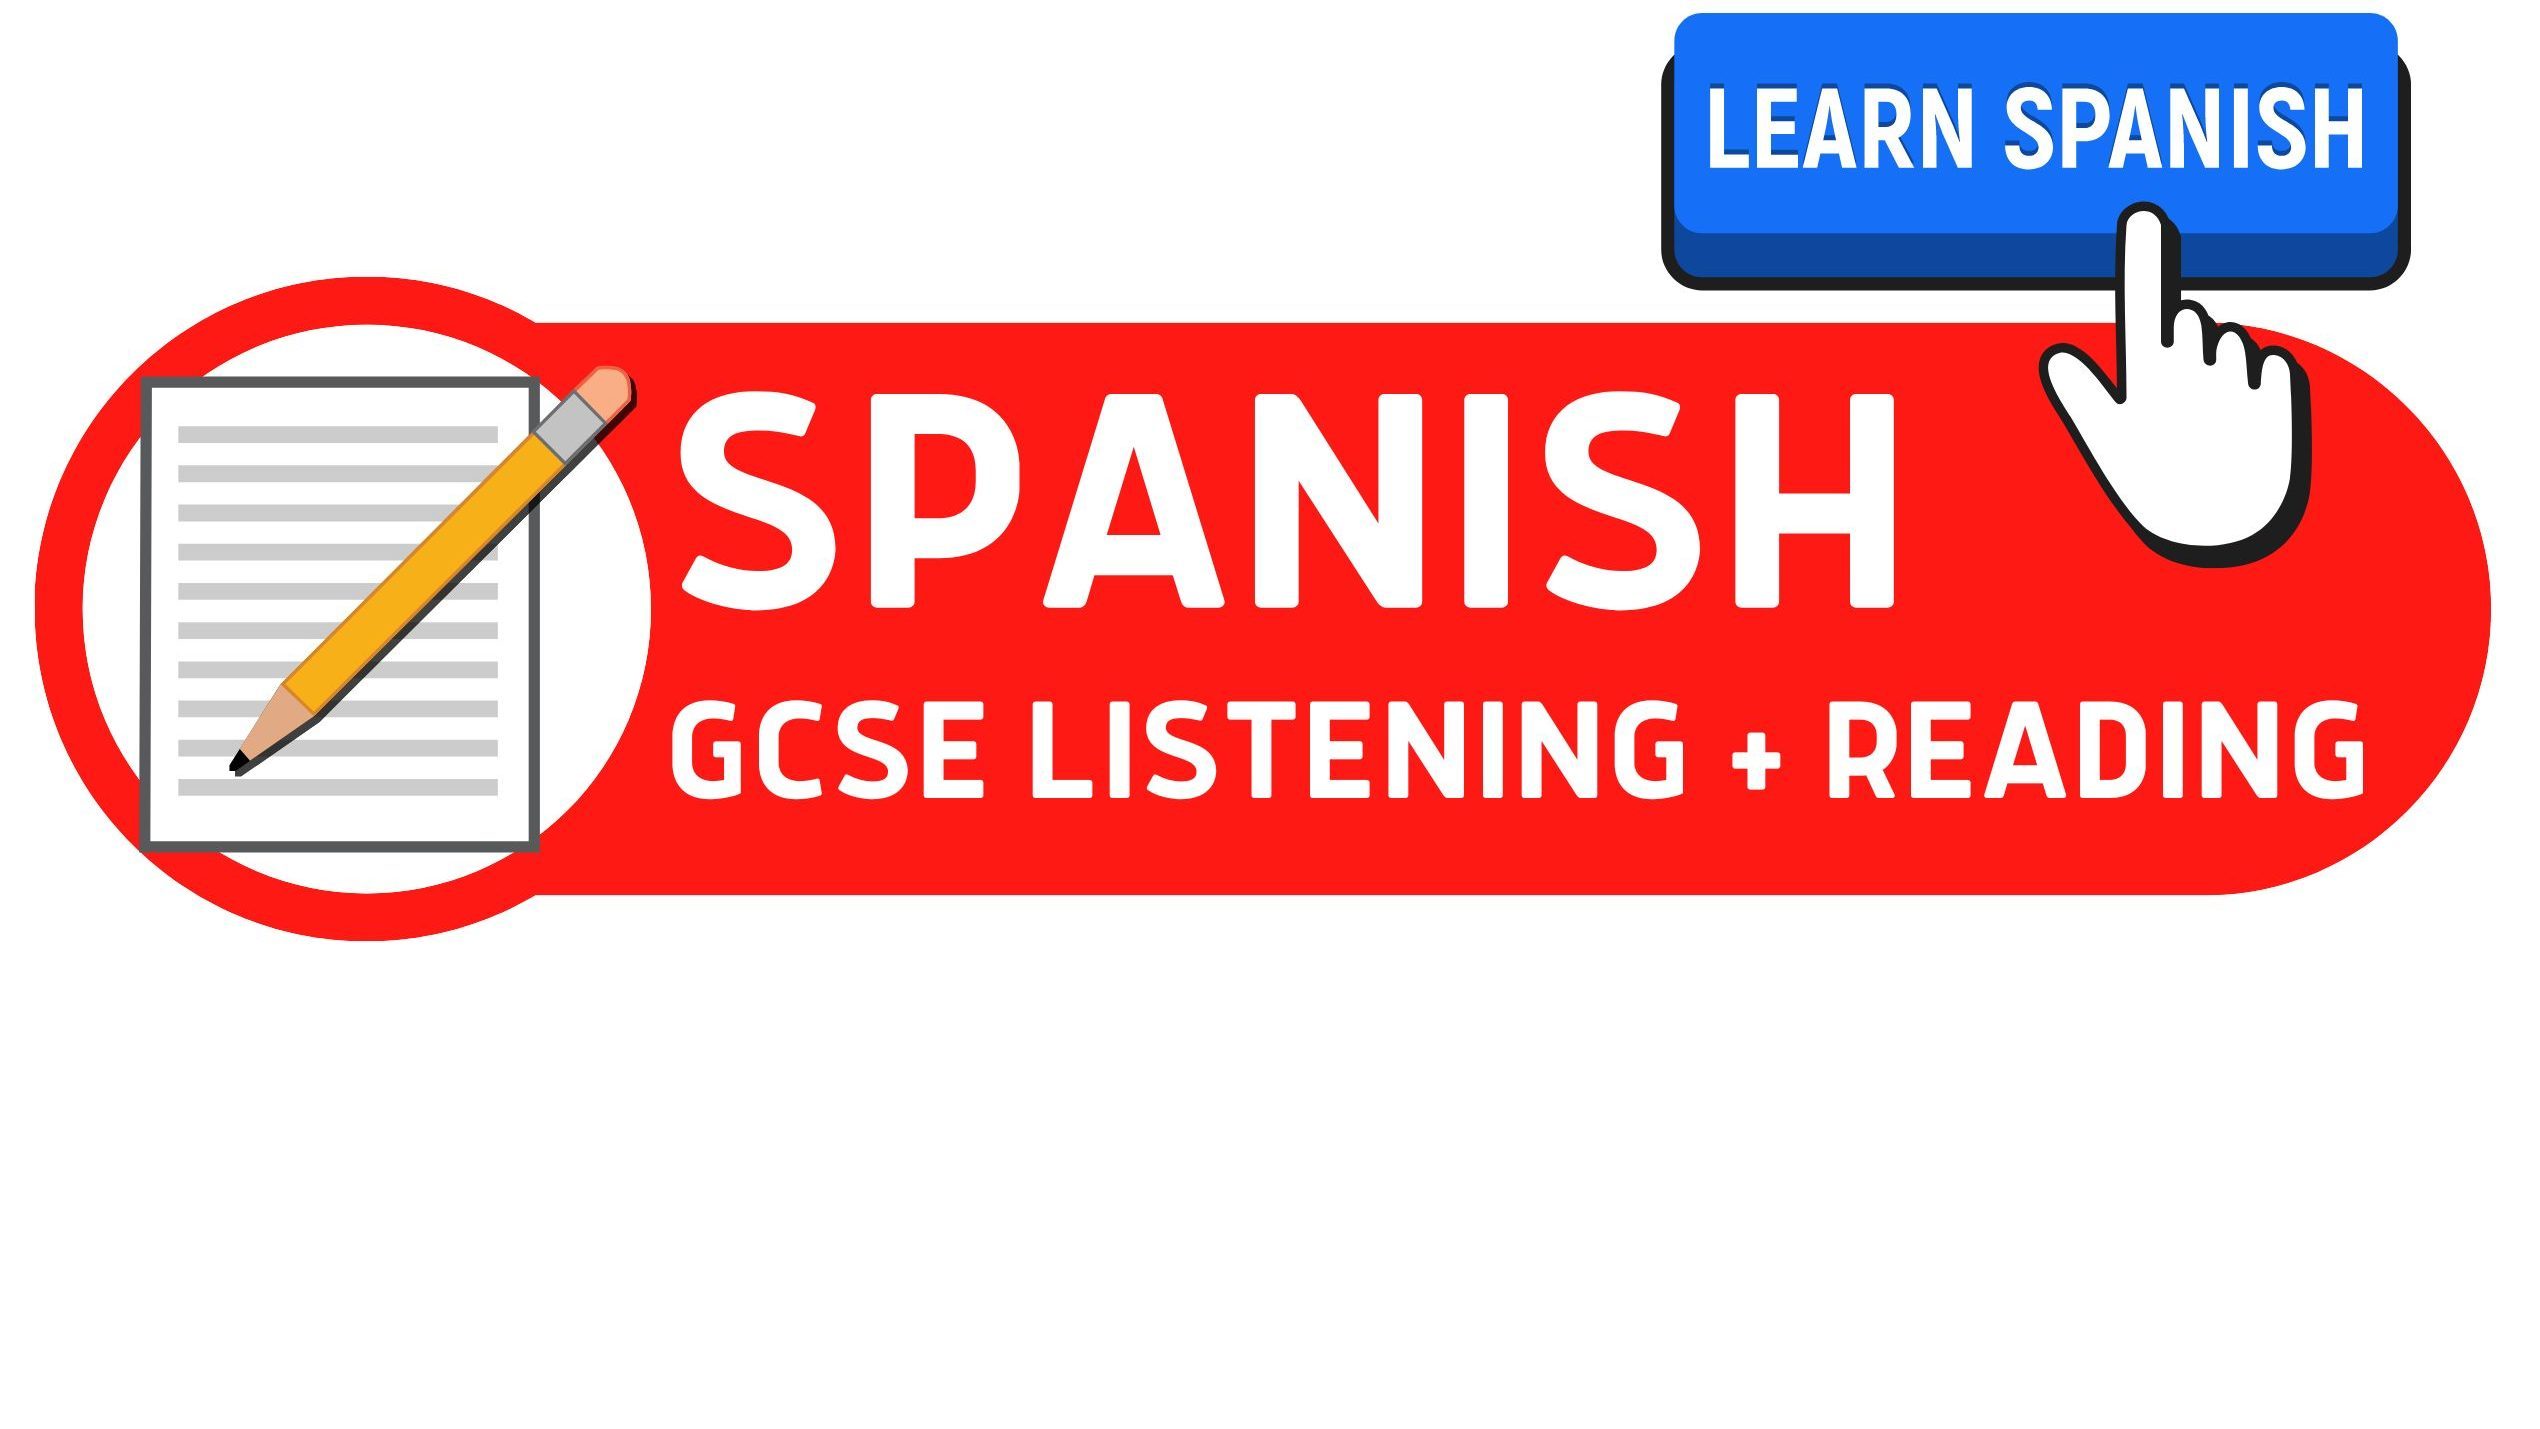 GCSE Spanish Speaking Exam AQA - How to unlock Spanish